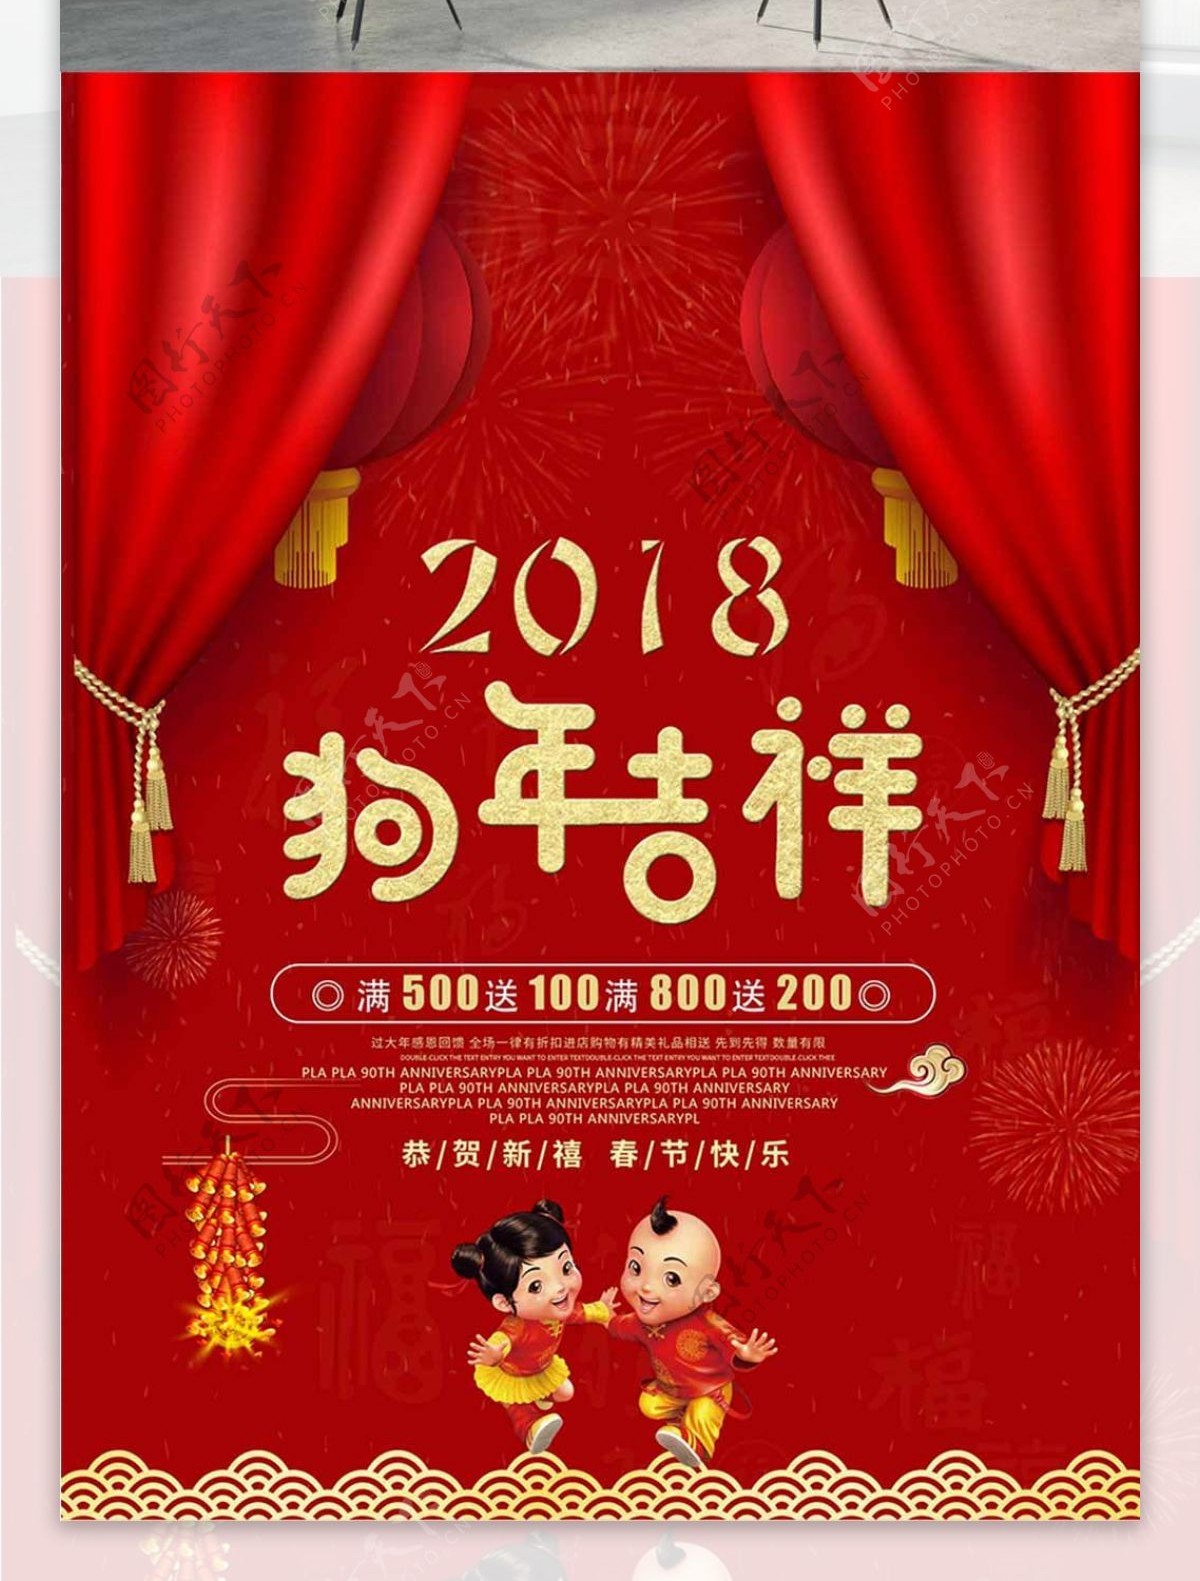 2018红色喜庆商用海报psd分层素材